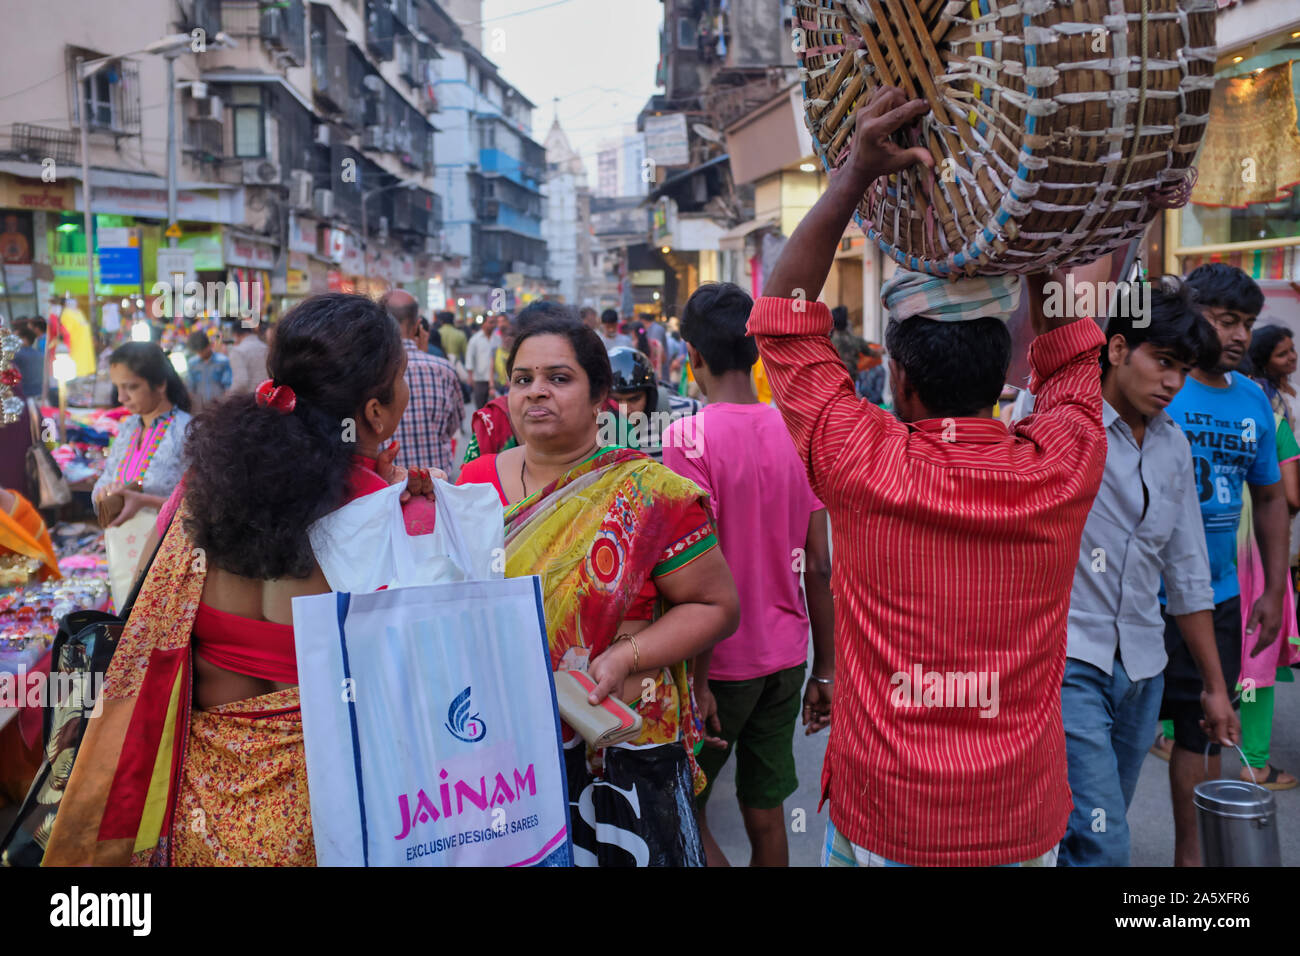 Due indiani casalinghe stop per chattare nella trafficata area di mercato di Bhuleshwar, Mumbai, India, mentre un facchino che porta il suo cesto sulla sua testa passa da Foto Stock